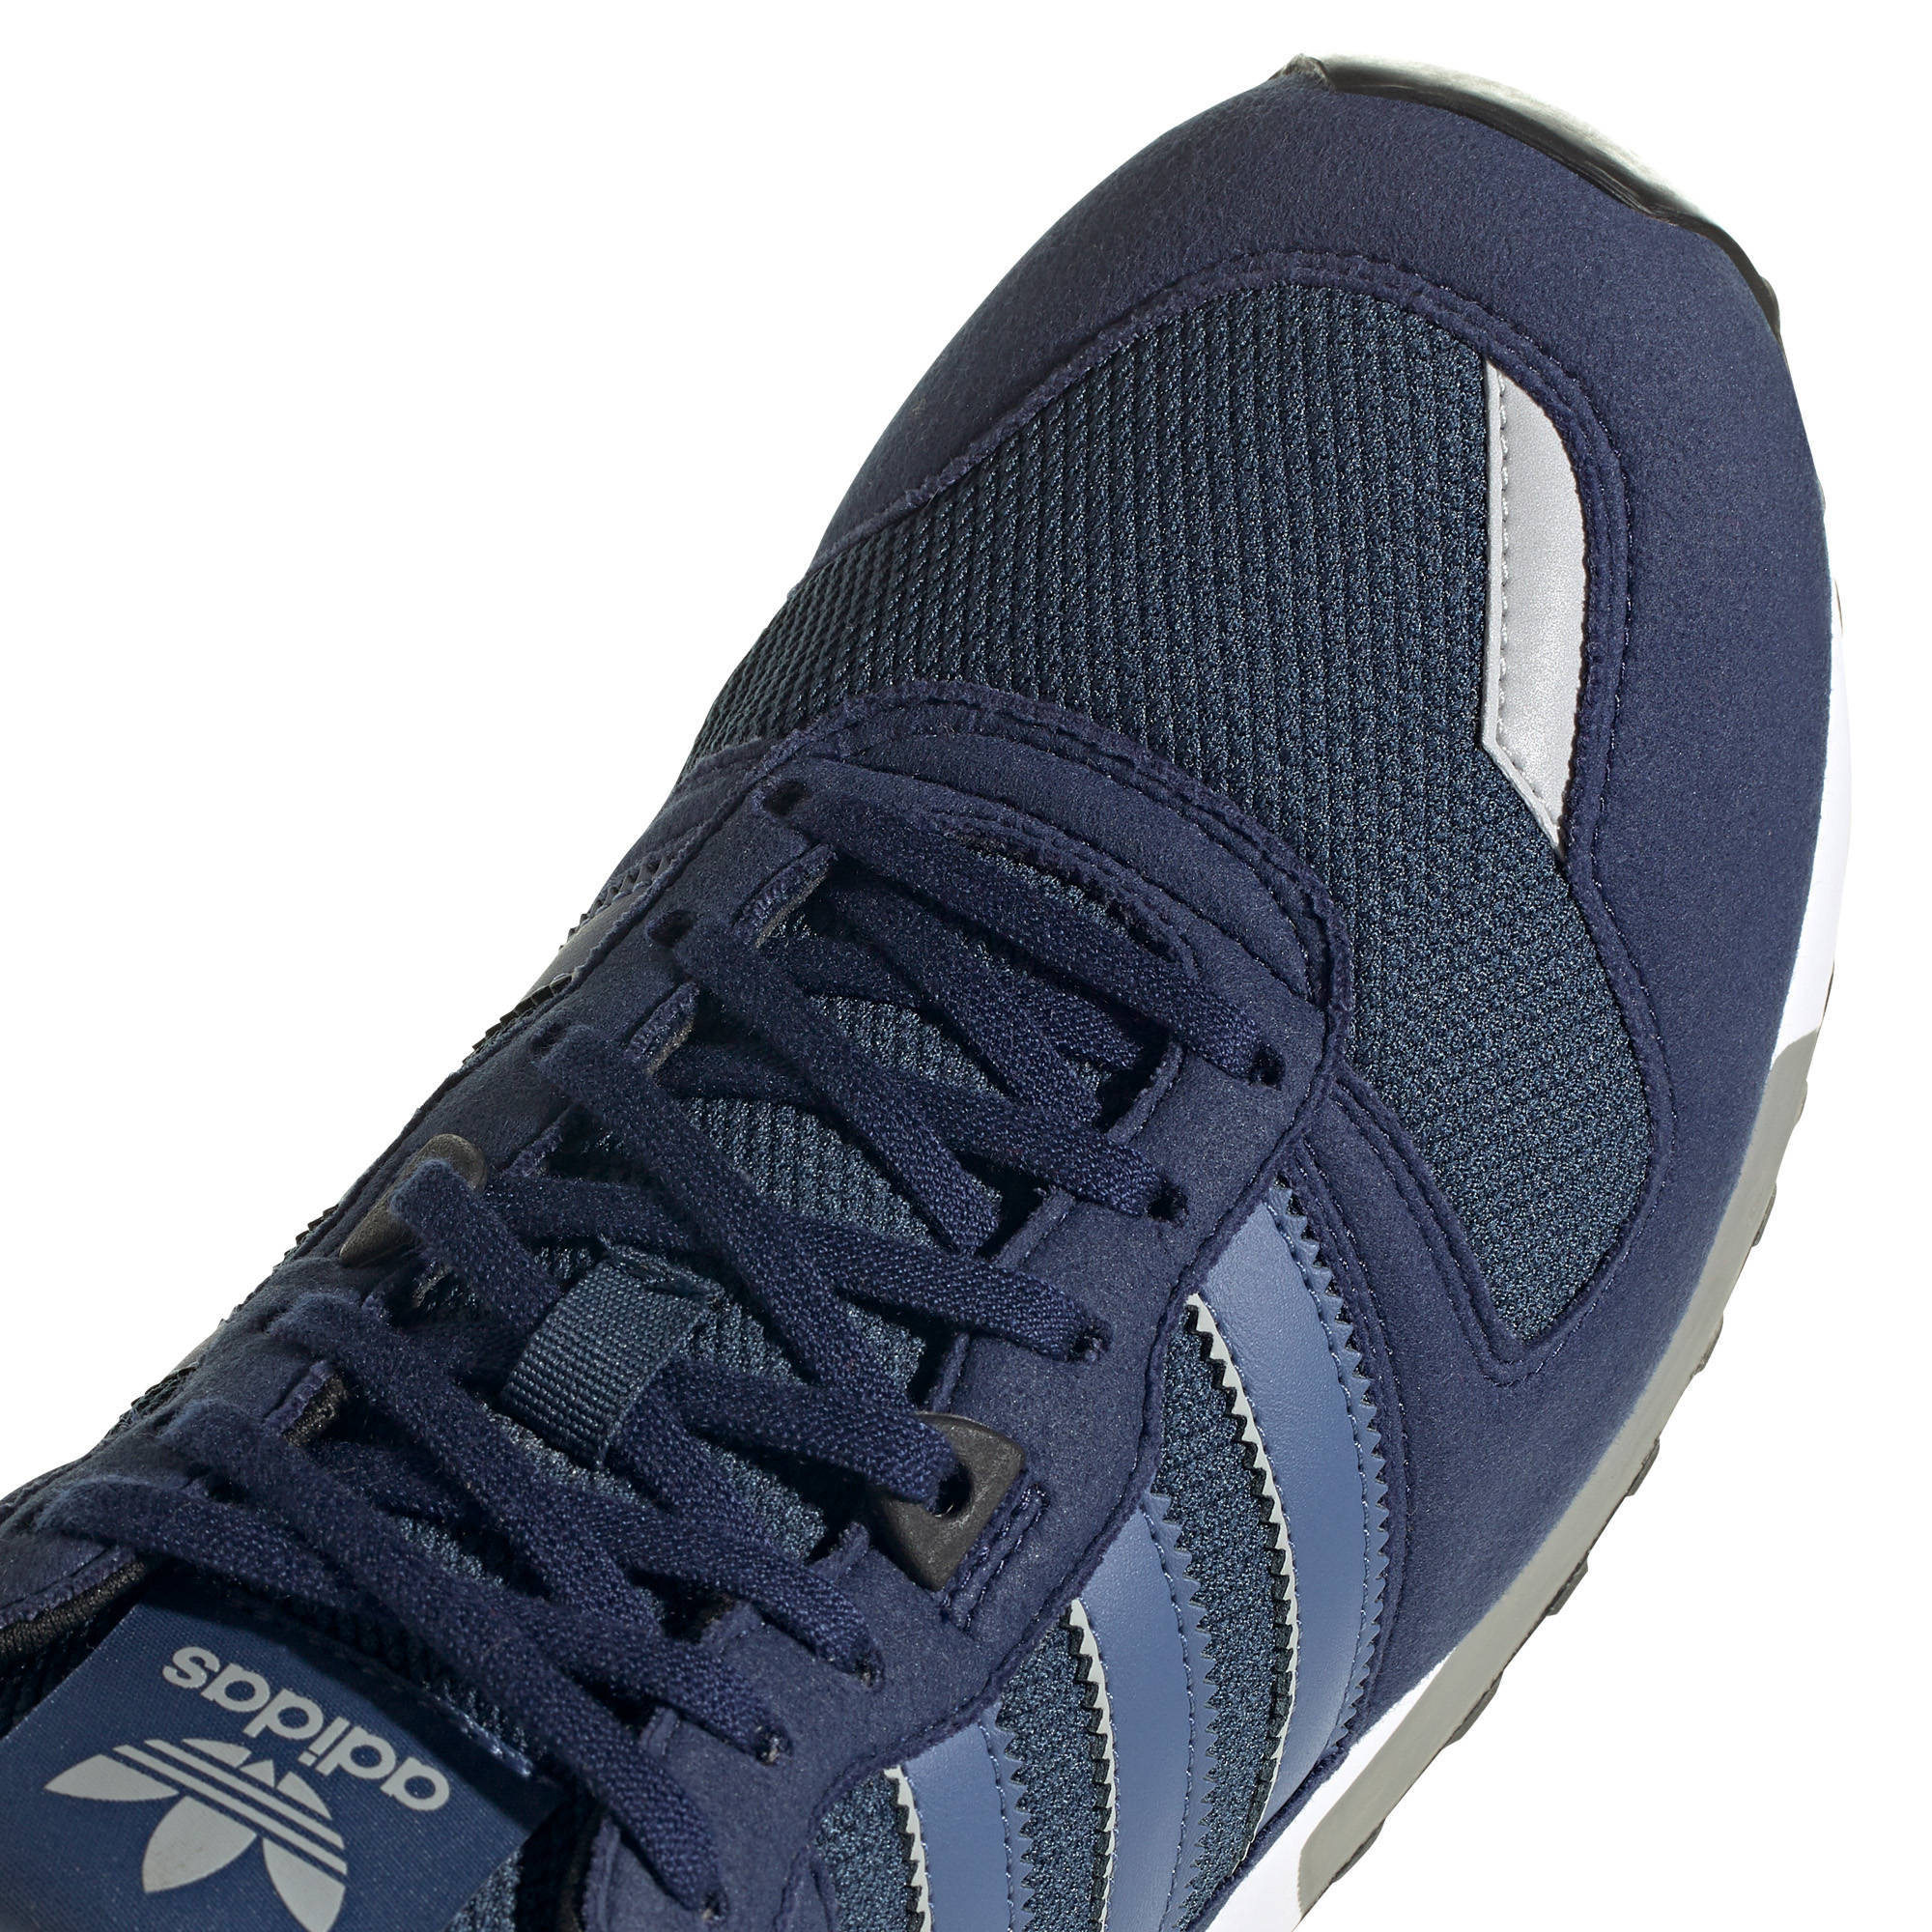 ZX 700 sneakers donkerblauw/blauw